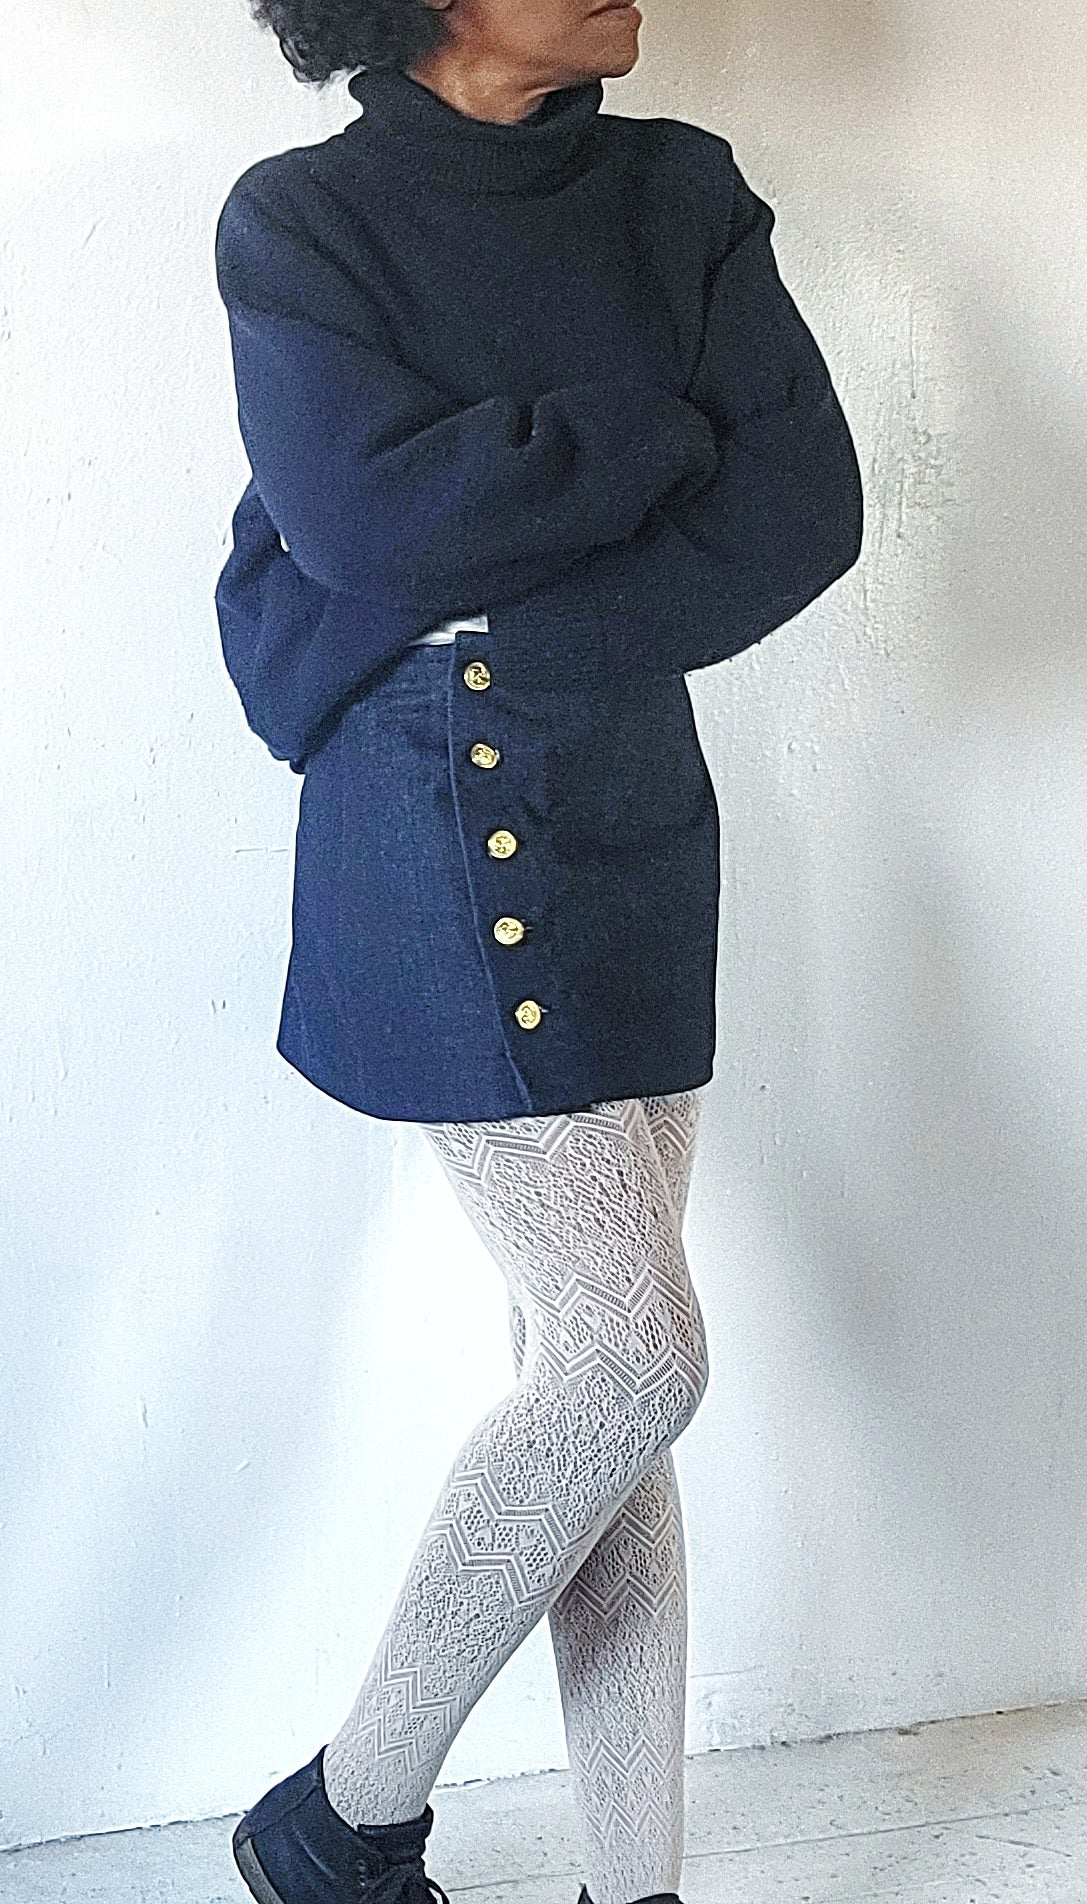 Denim Mini Skirt, Navy Blue Mini Skirt, Blue Denim Mini Skirt, Denim Skirt, Made to Order